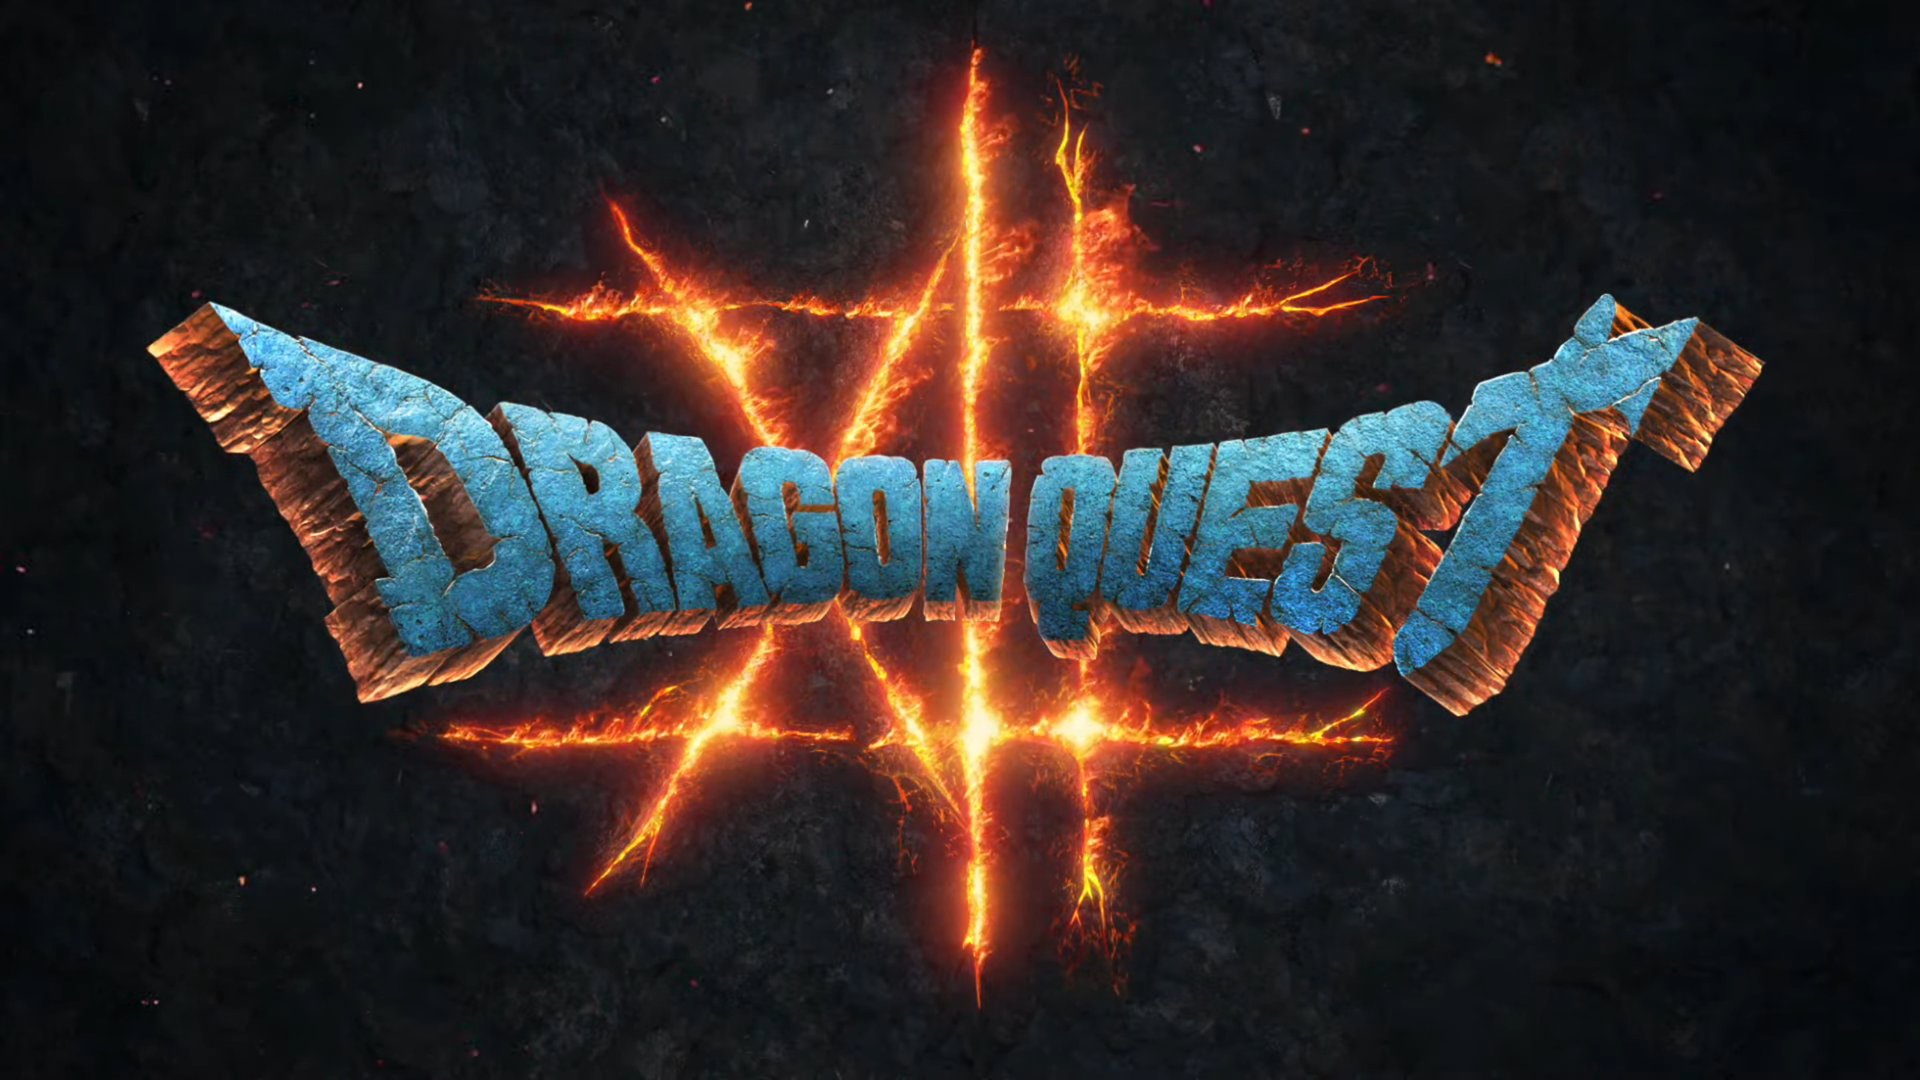 Dragon Quest 12 Cov nplaim ntawm txoj hmoo